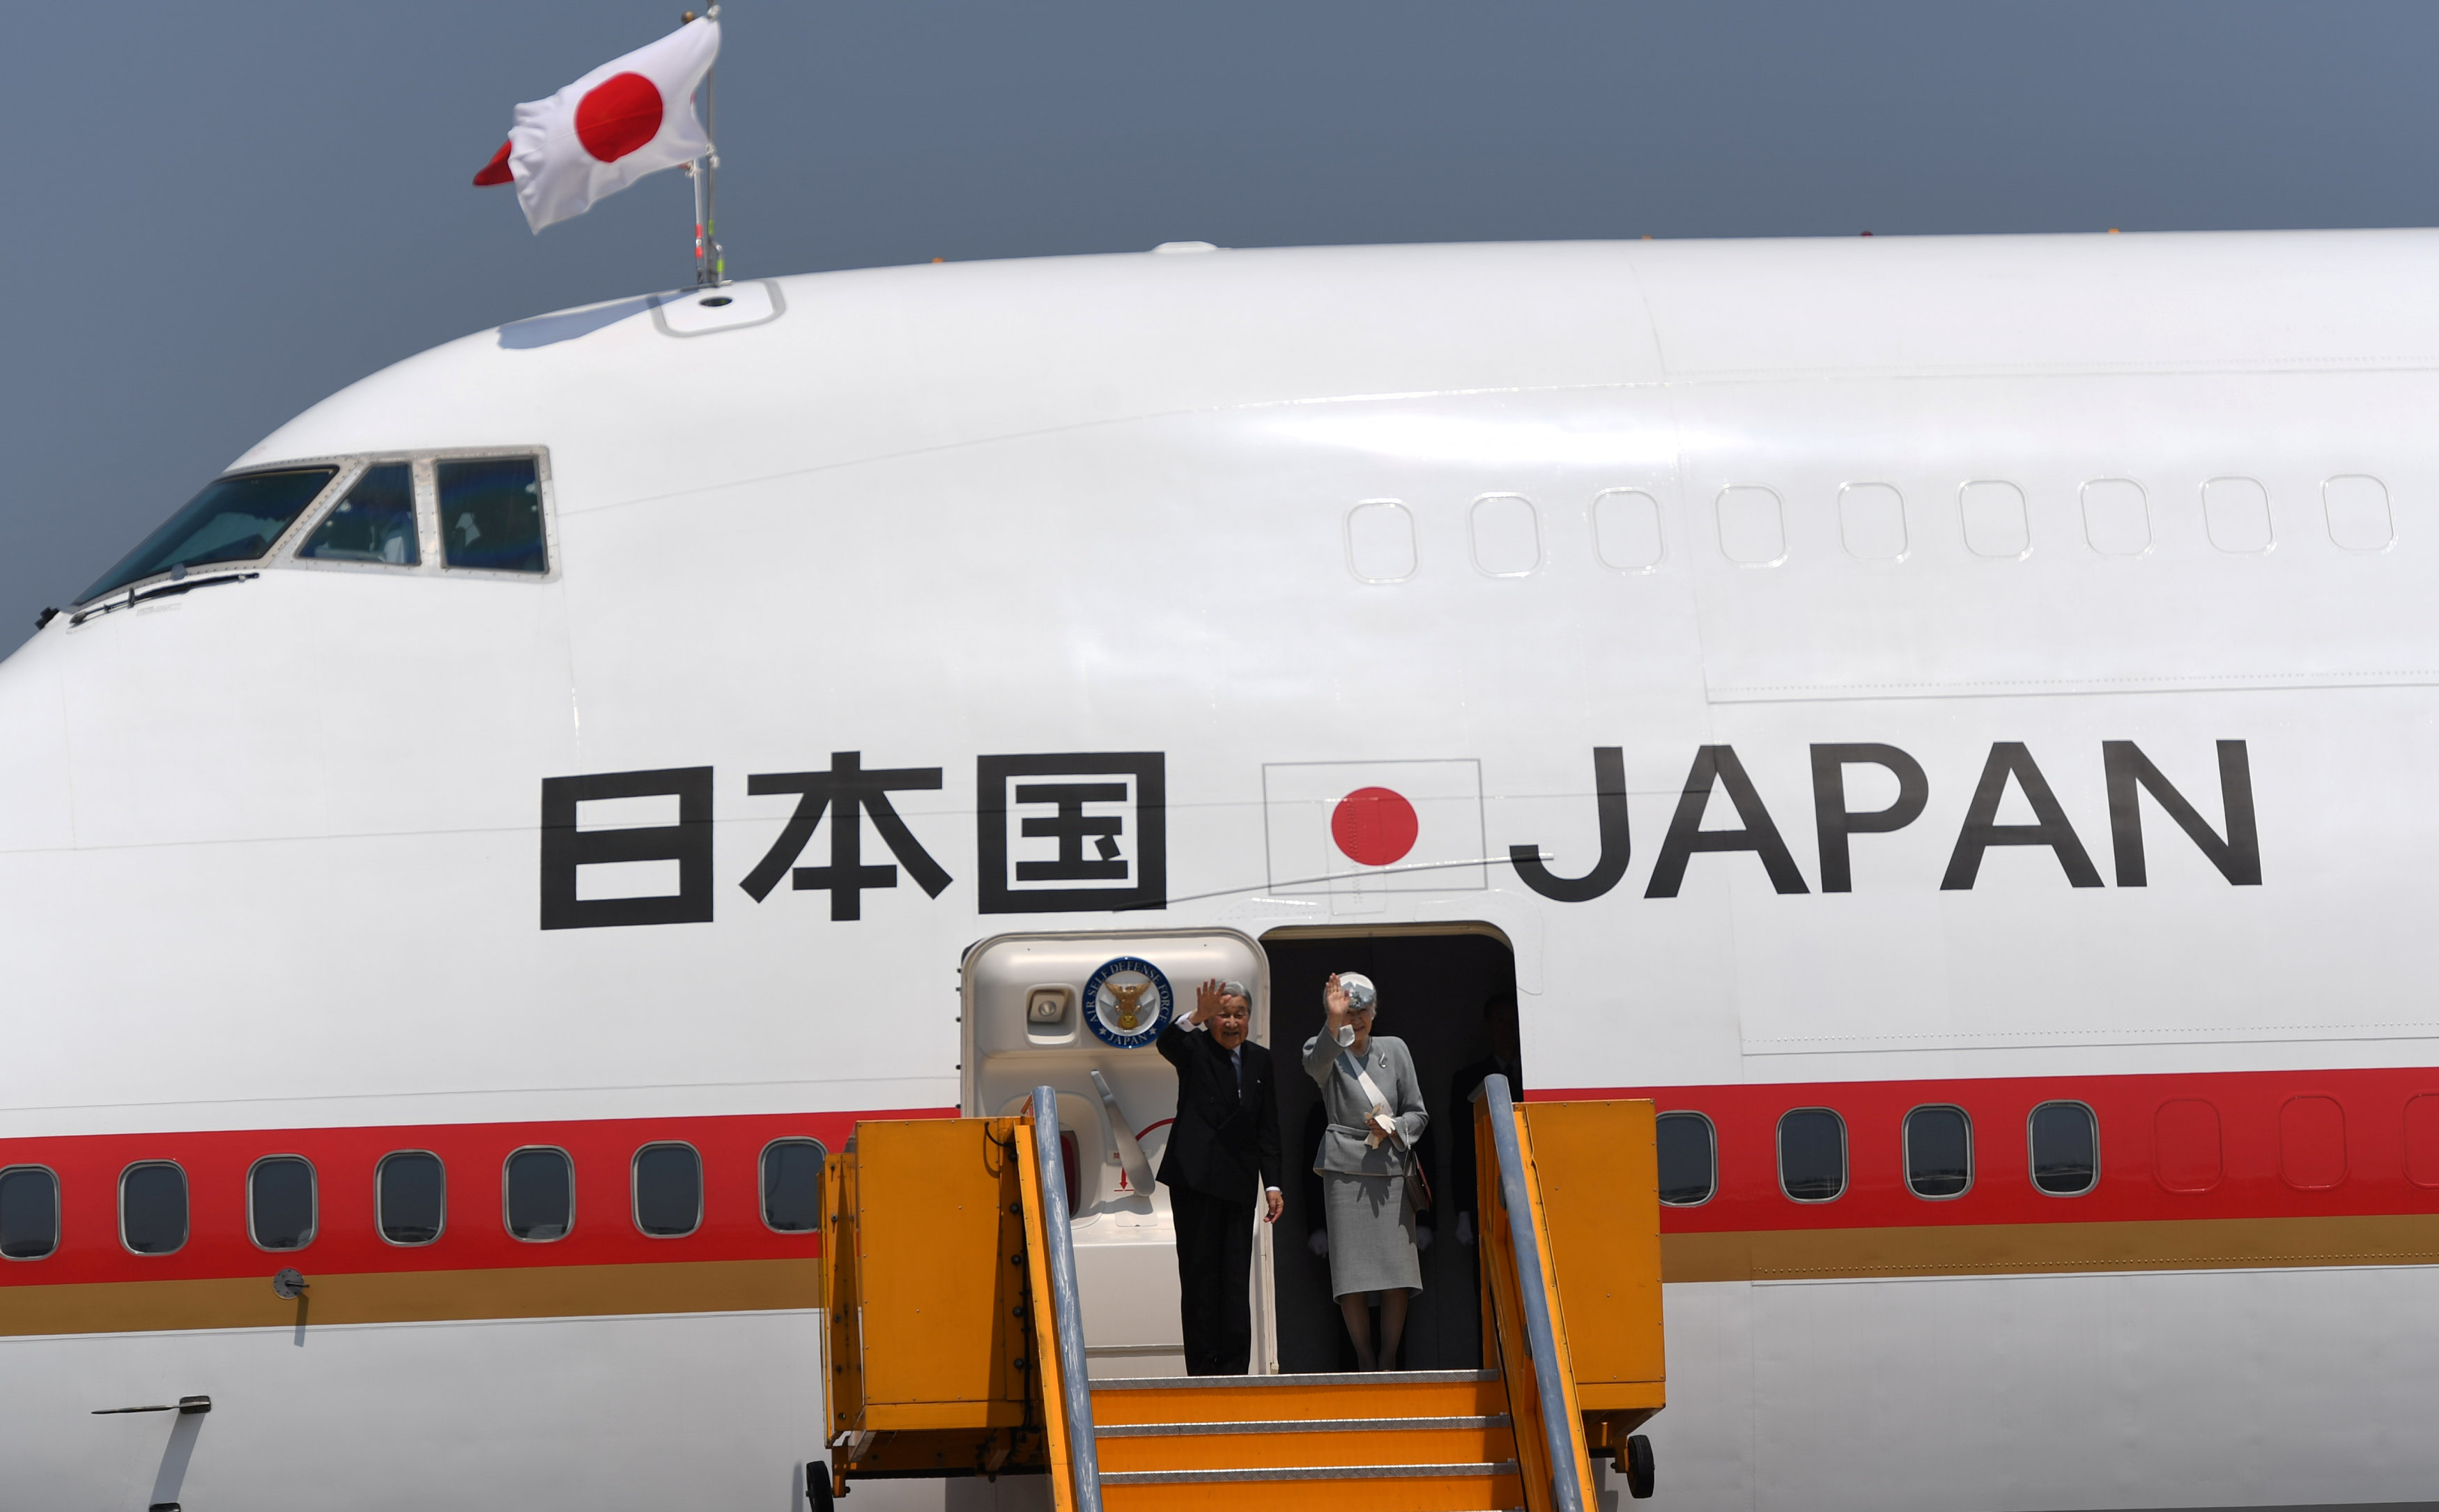 إمبراطور اليابان وزوجته يستقلان الطائرة